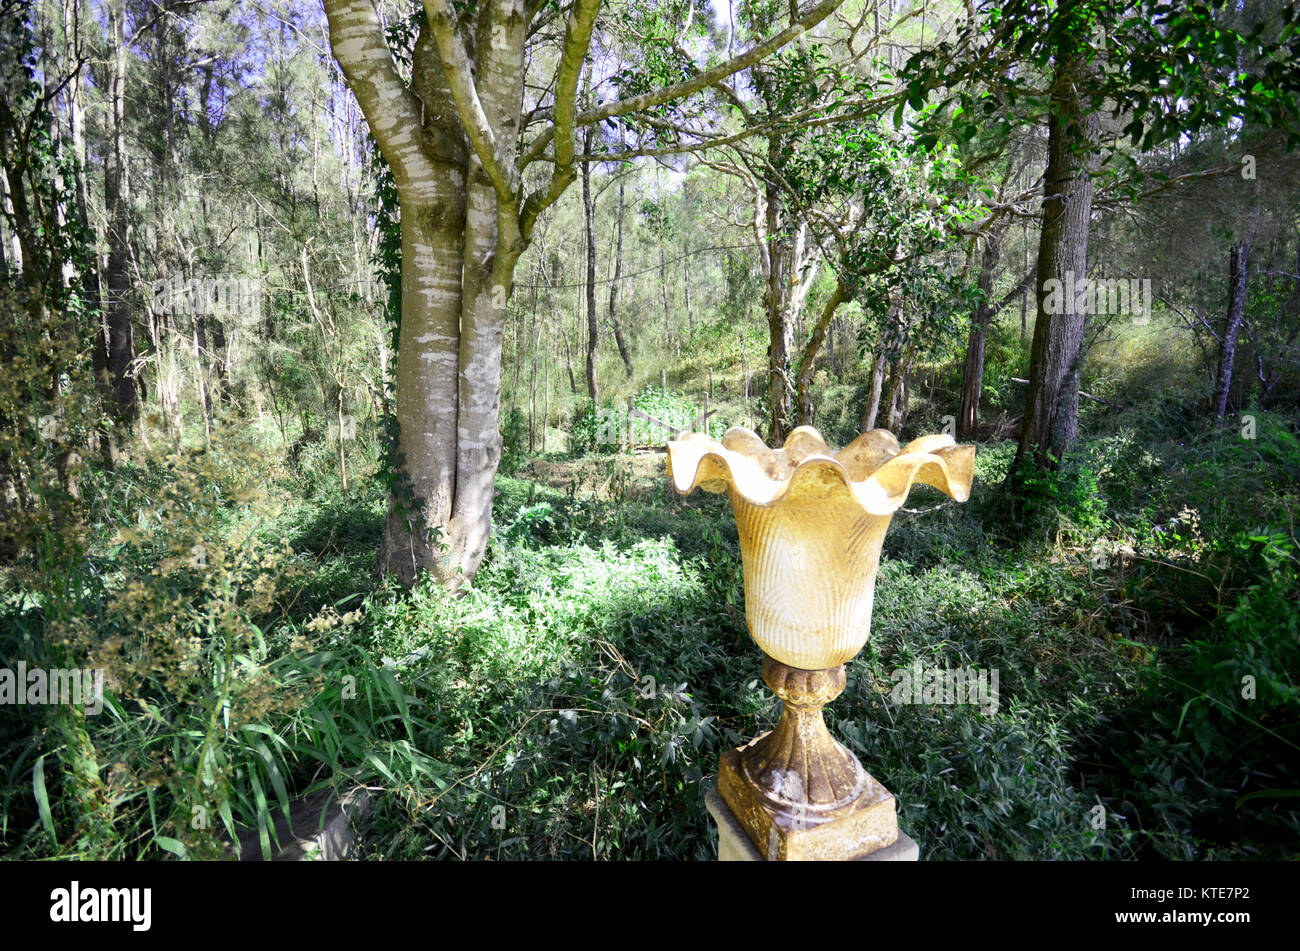 Enchanted forest bushland Stock Photo